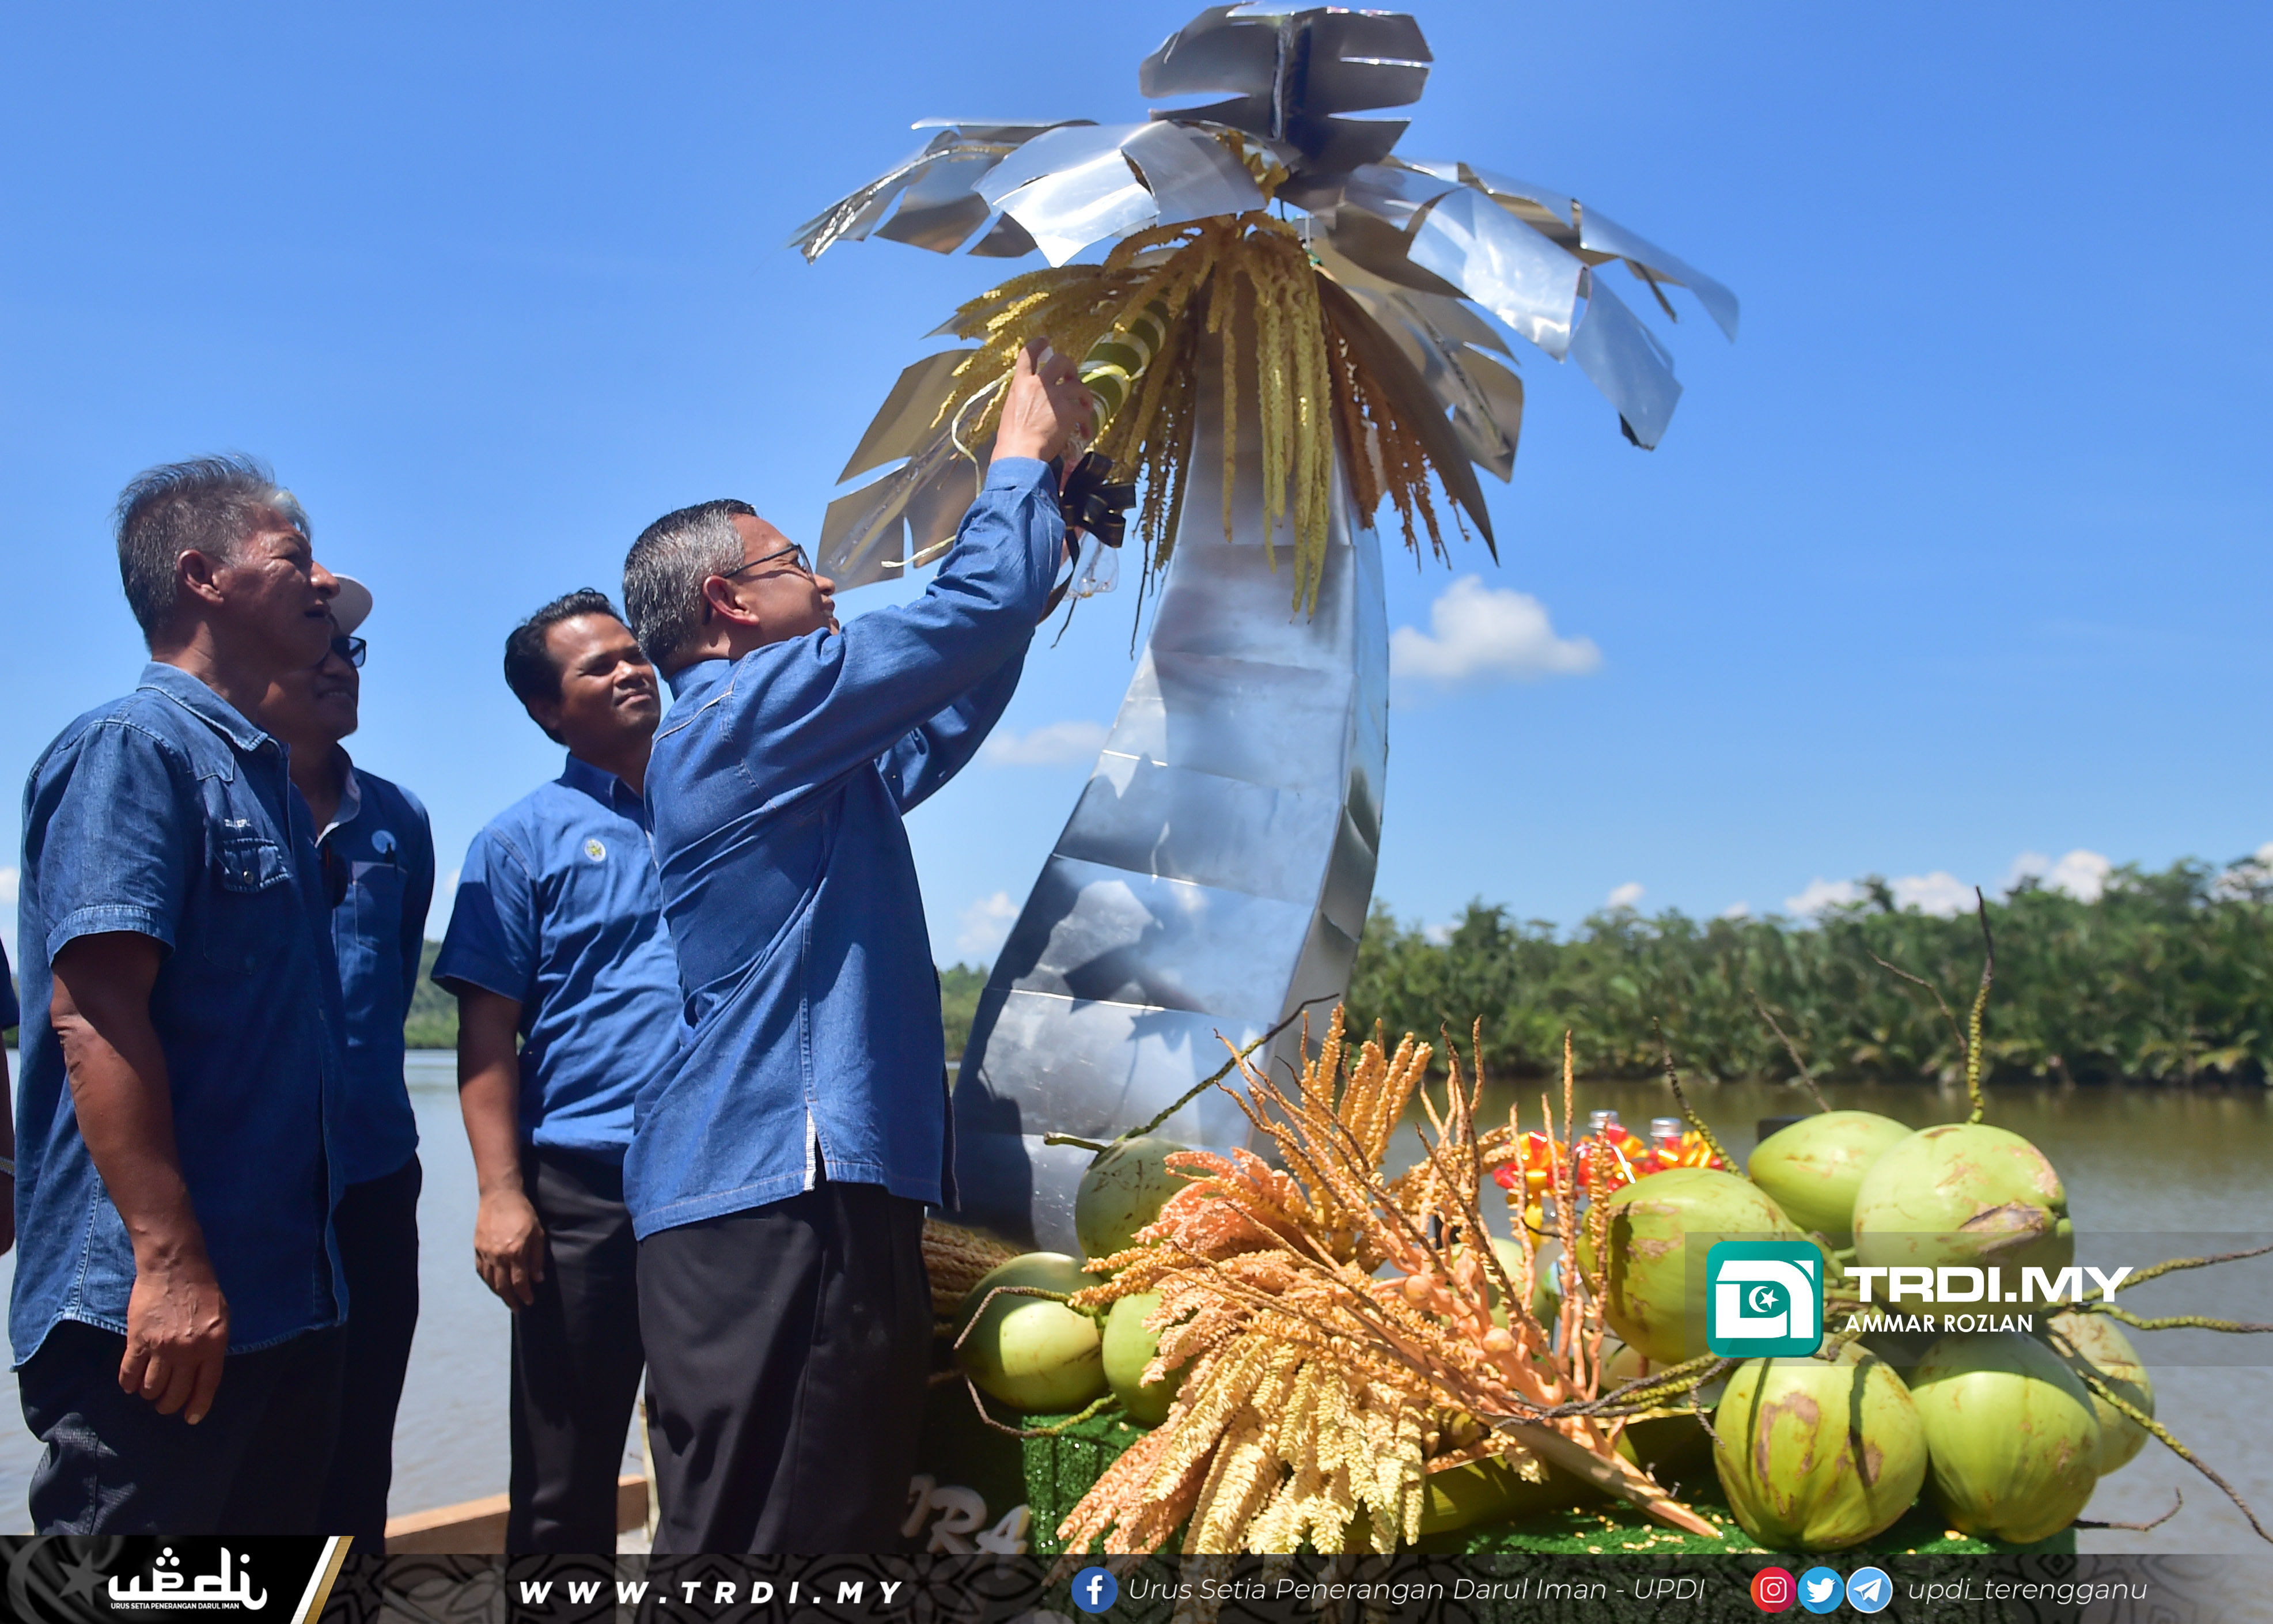 YB Dr Azman merasmikan Majlis Pelancaran Minuman Isotonik (Air Nira) Negeri Terengganu bertempat di Dataran Batu Putih, Marang.